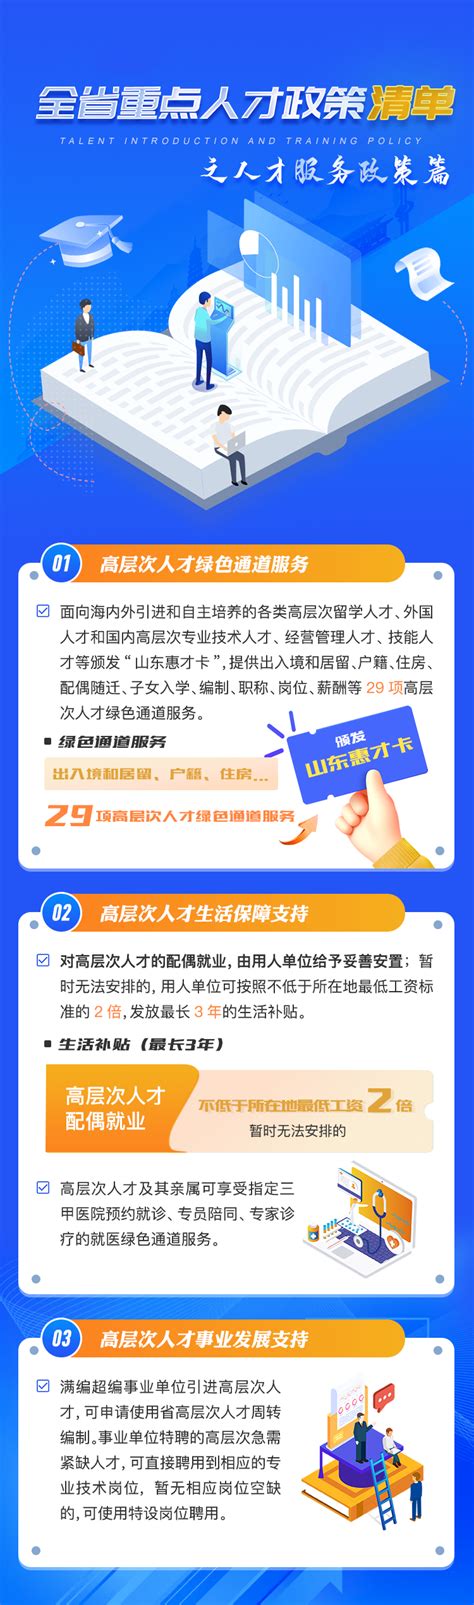 广州营商环境改革迈进3.0时代-产业资讯-广州人才工作网